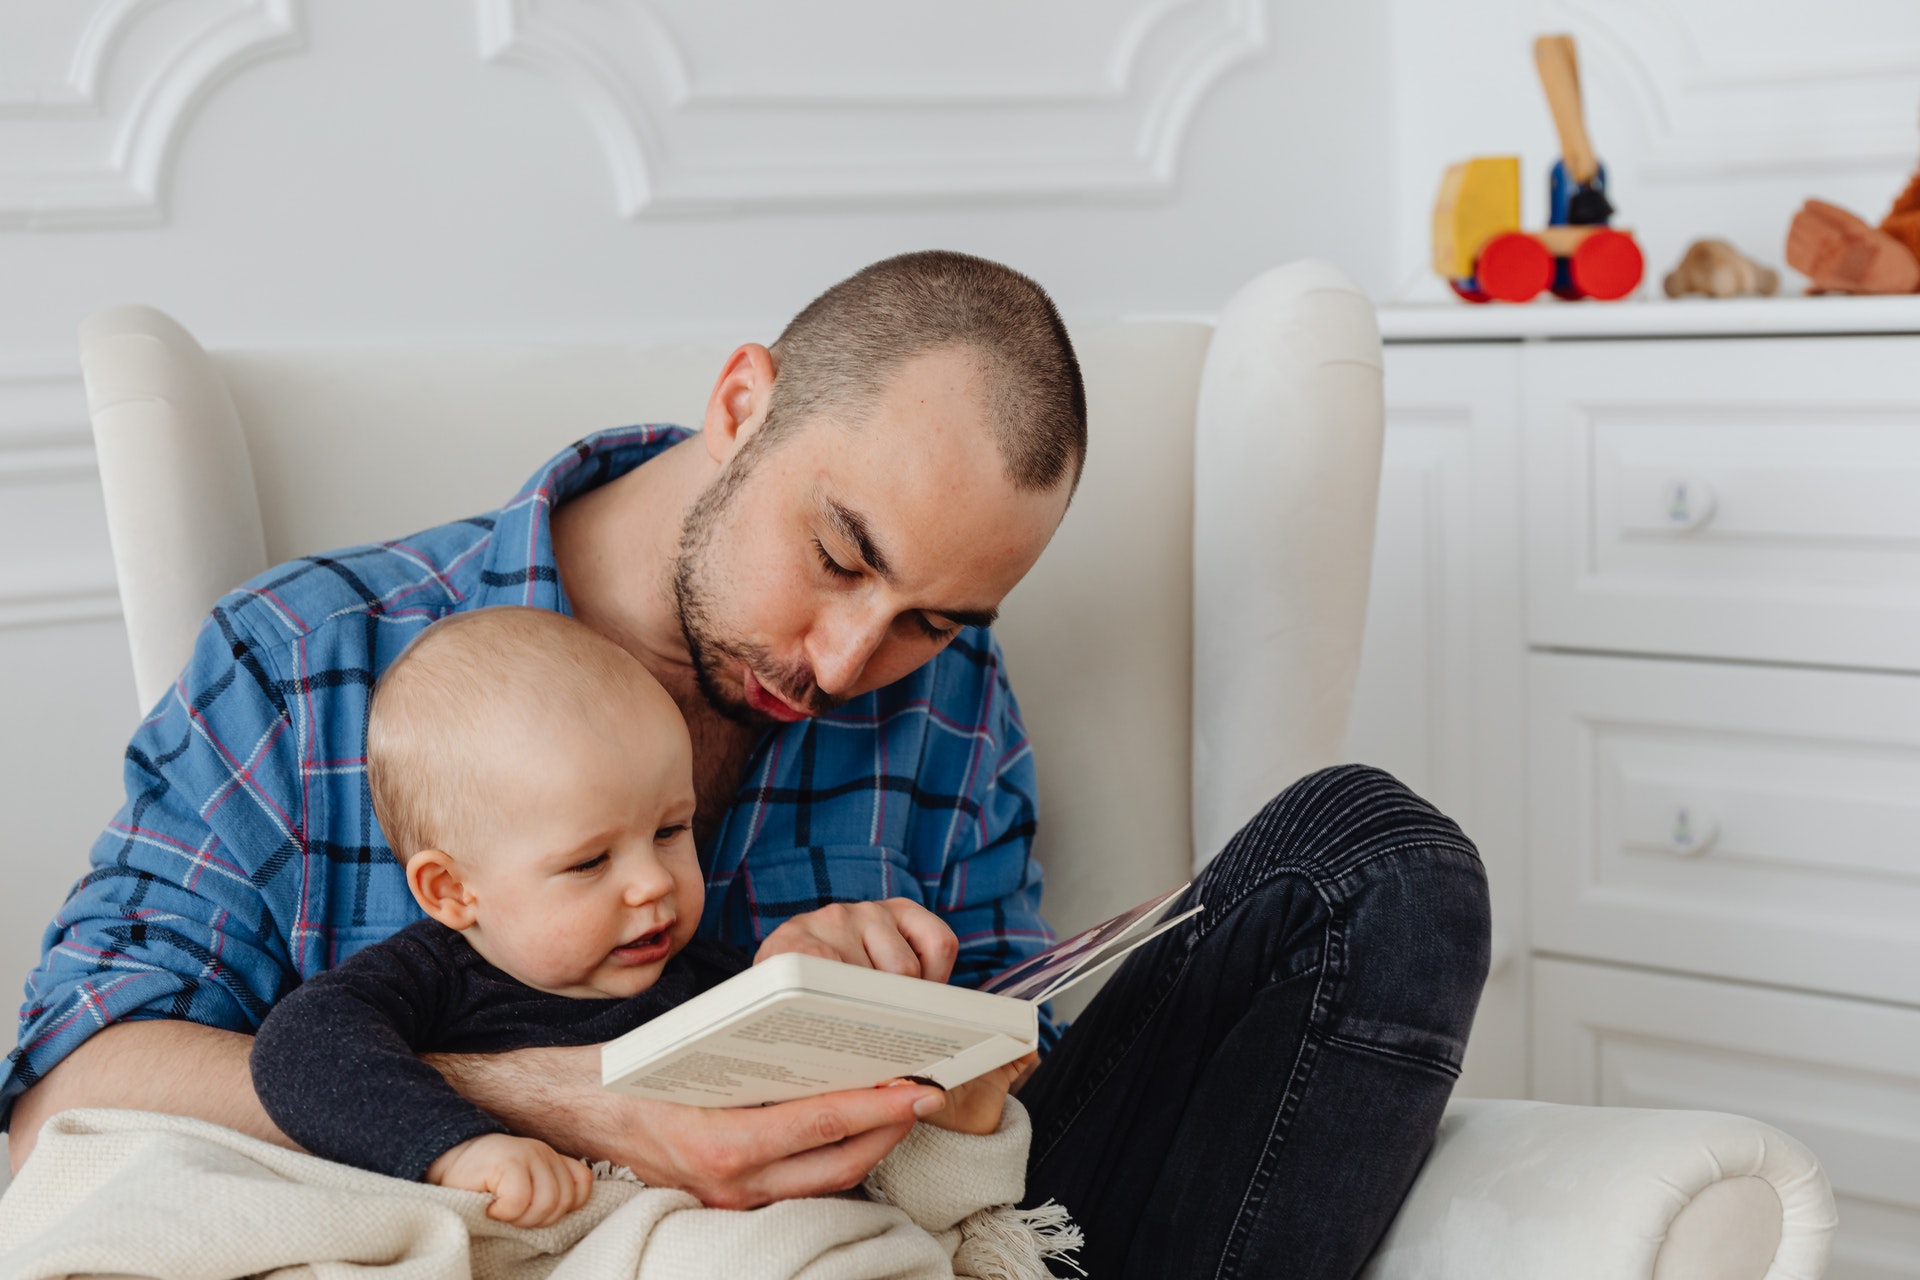 Congé paternité : 1 père sur 3 ne le prend toujours pas